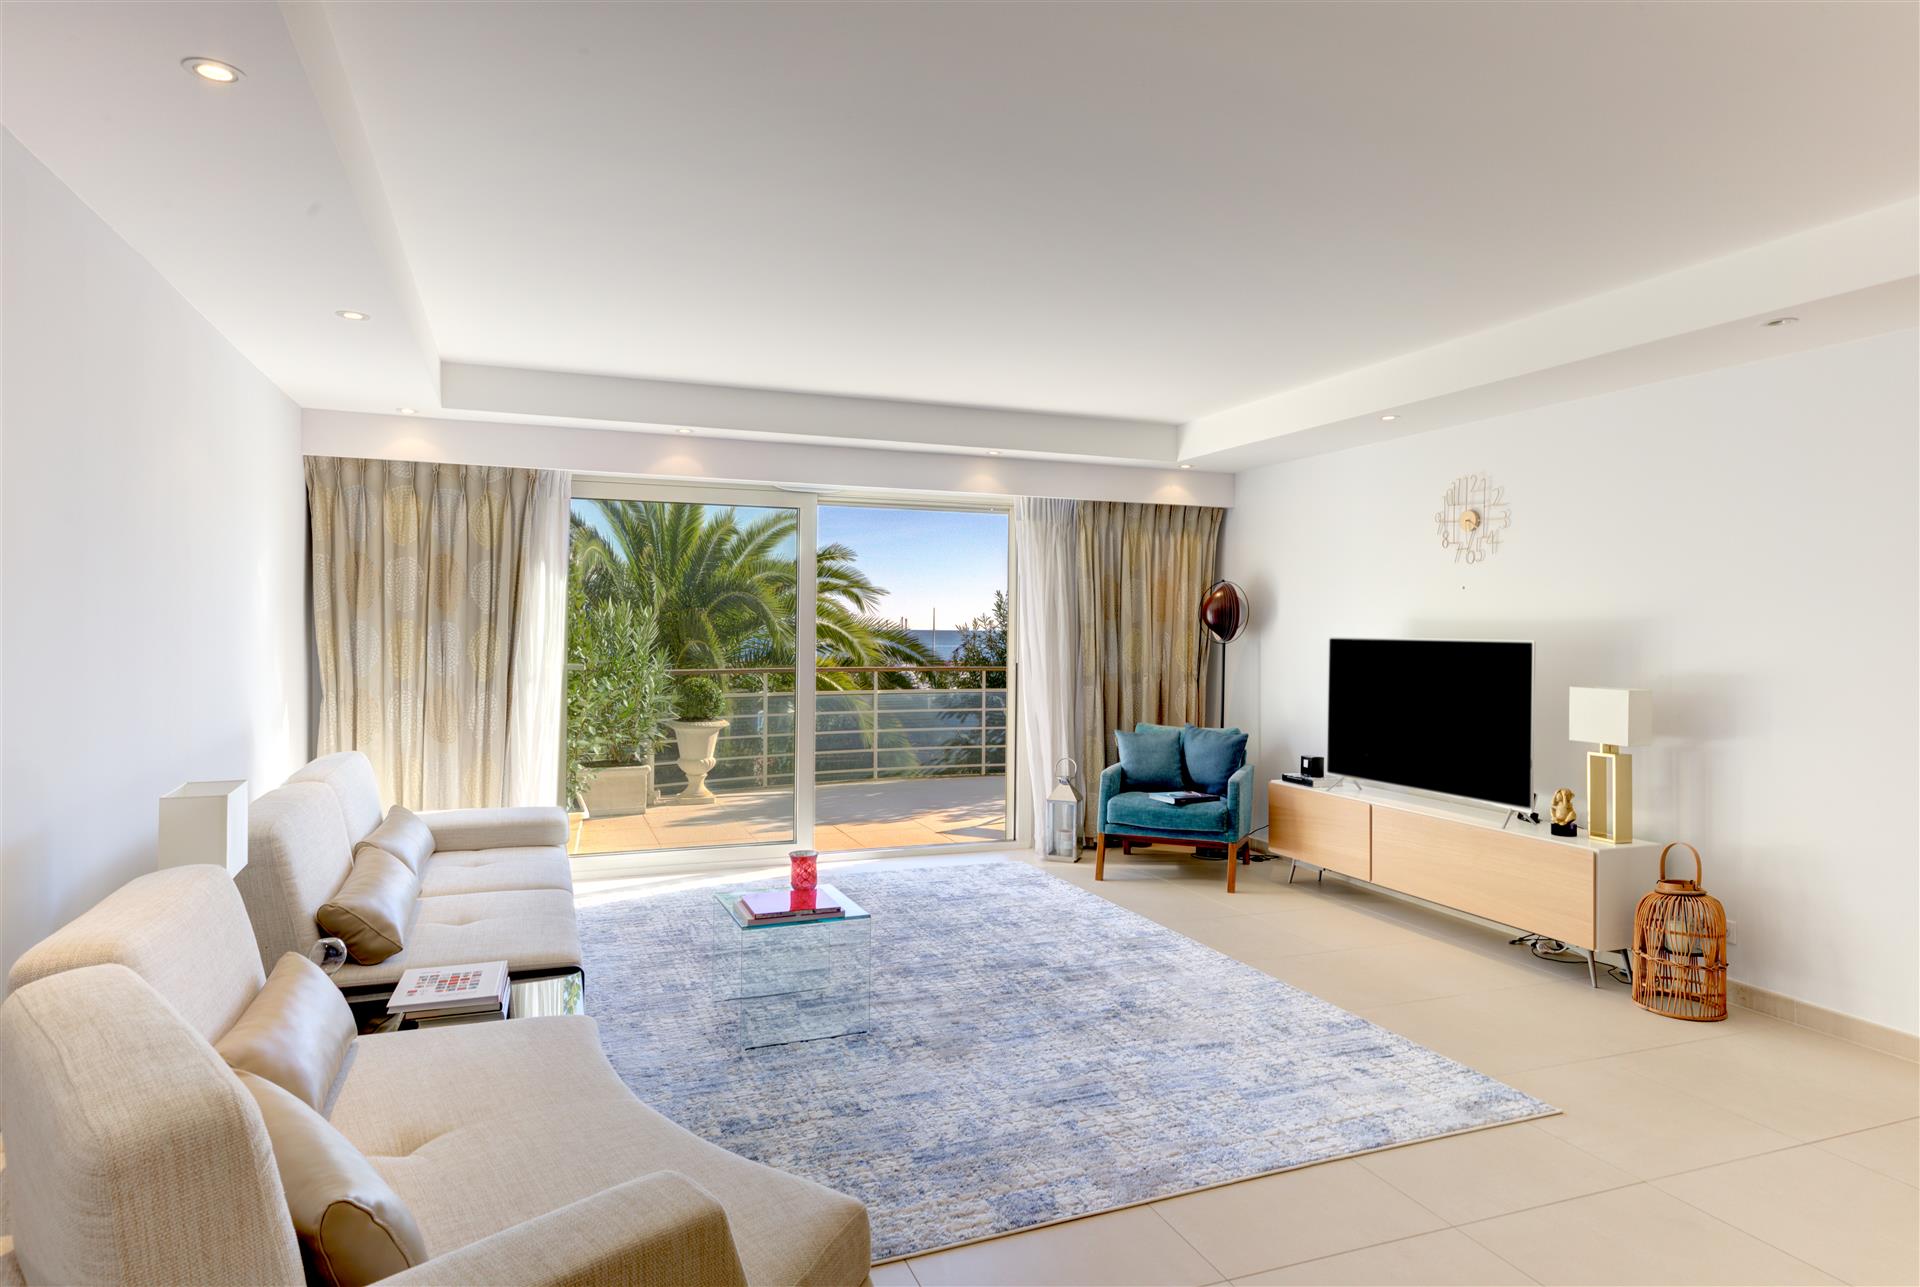 Prachtig nieuw luxe appartement 150m2, met uitzicht op zee. Directe eigenaar-directe eigenaar